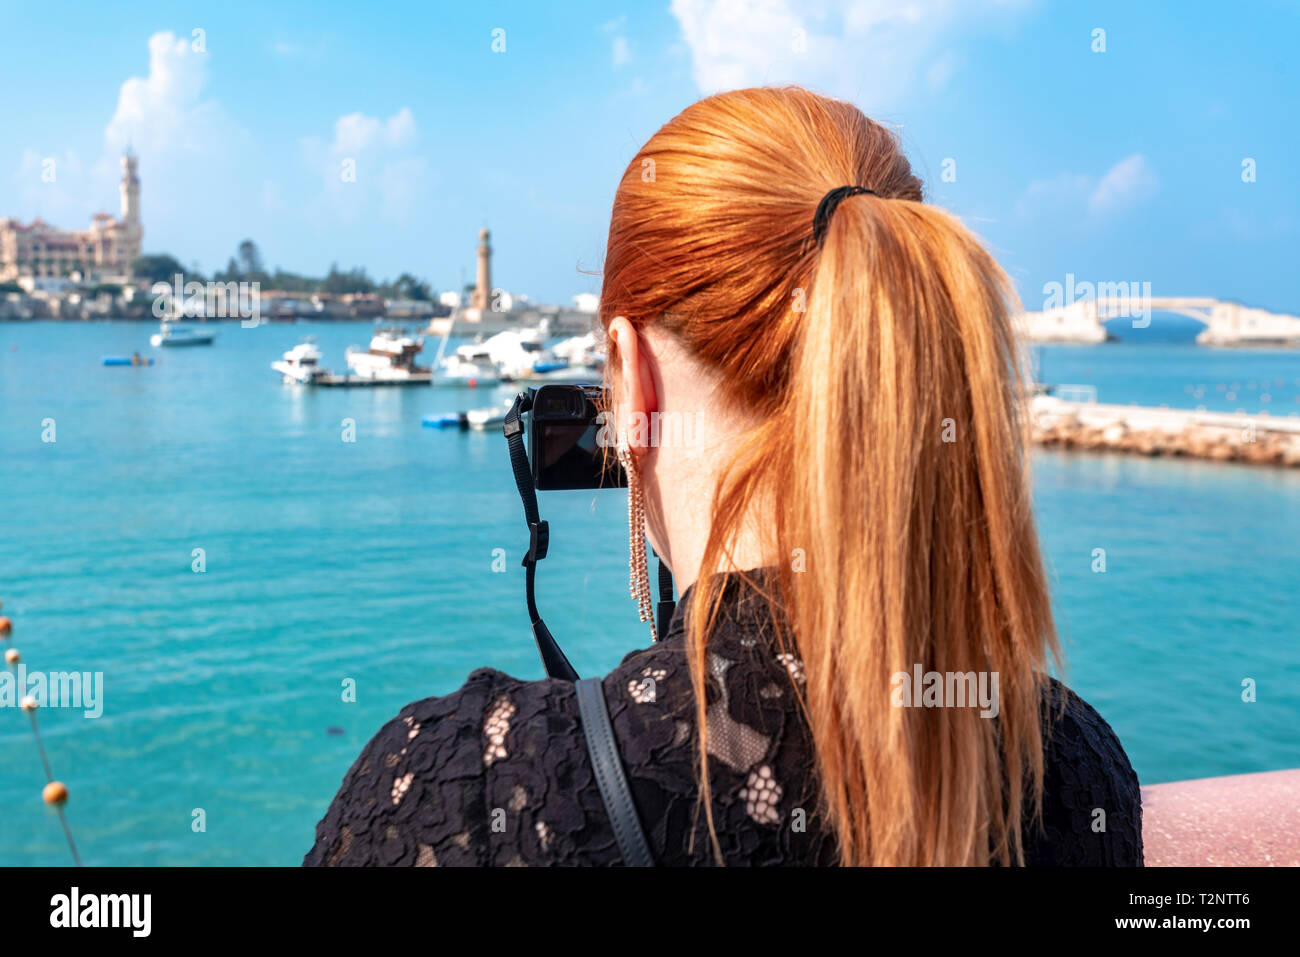 Woman with red hair photographier sur mer en direction de Montaza palace, vue arrière, Alexandria, Egypte Banque D'Images